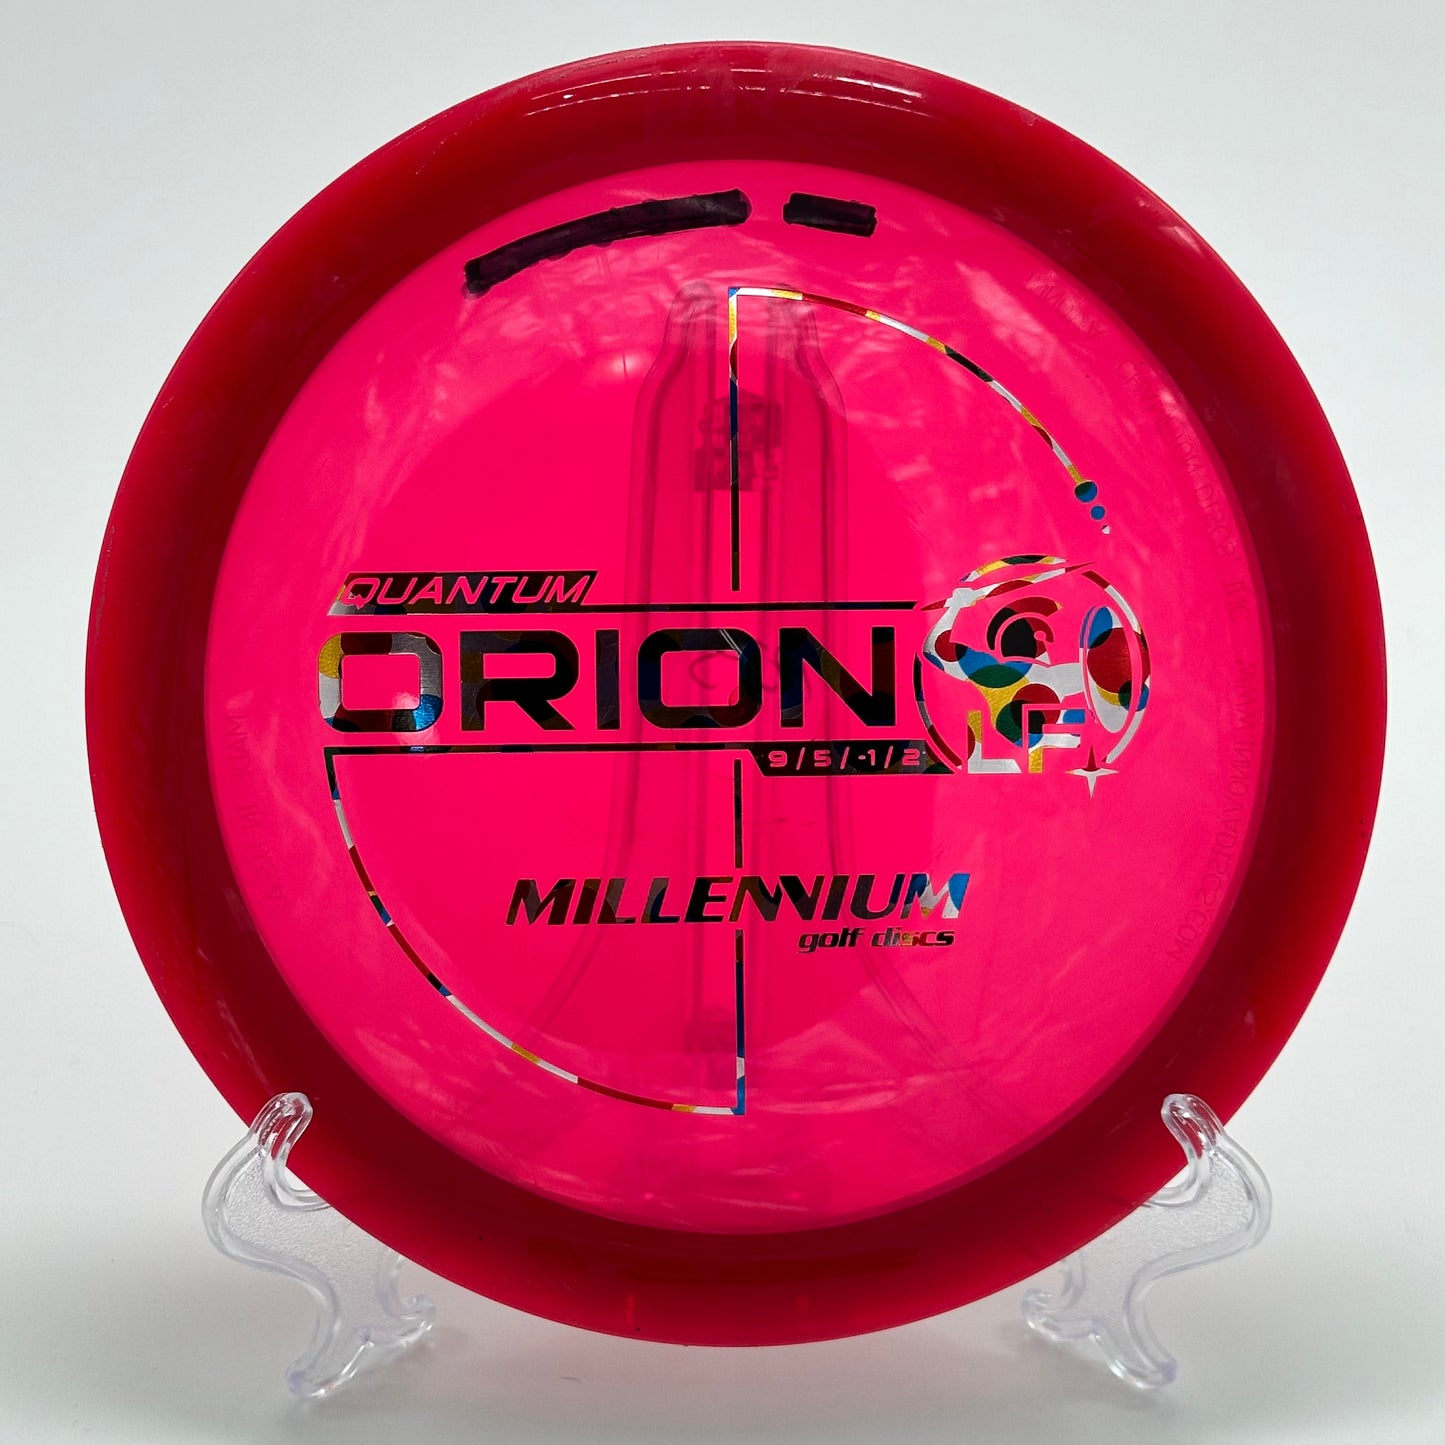 Millennium Orion LF | Quantum 1.7 Wonderbread